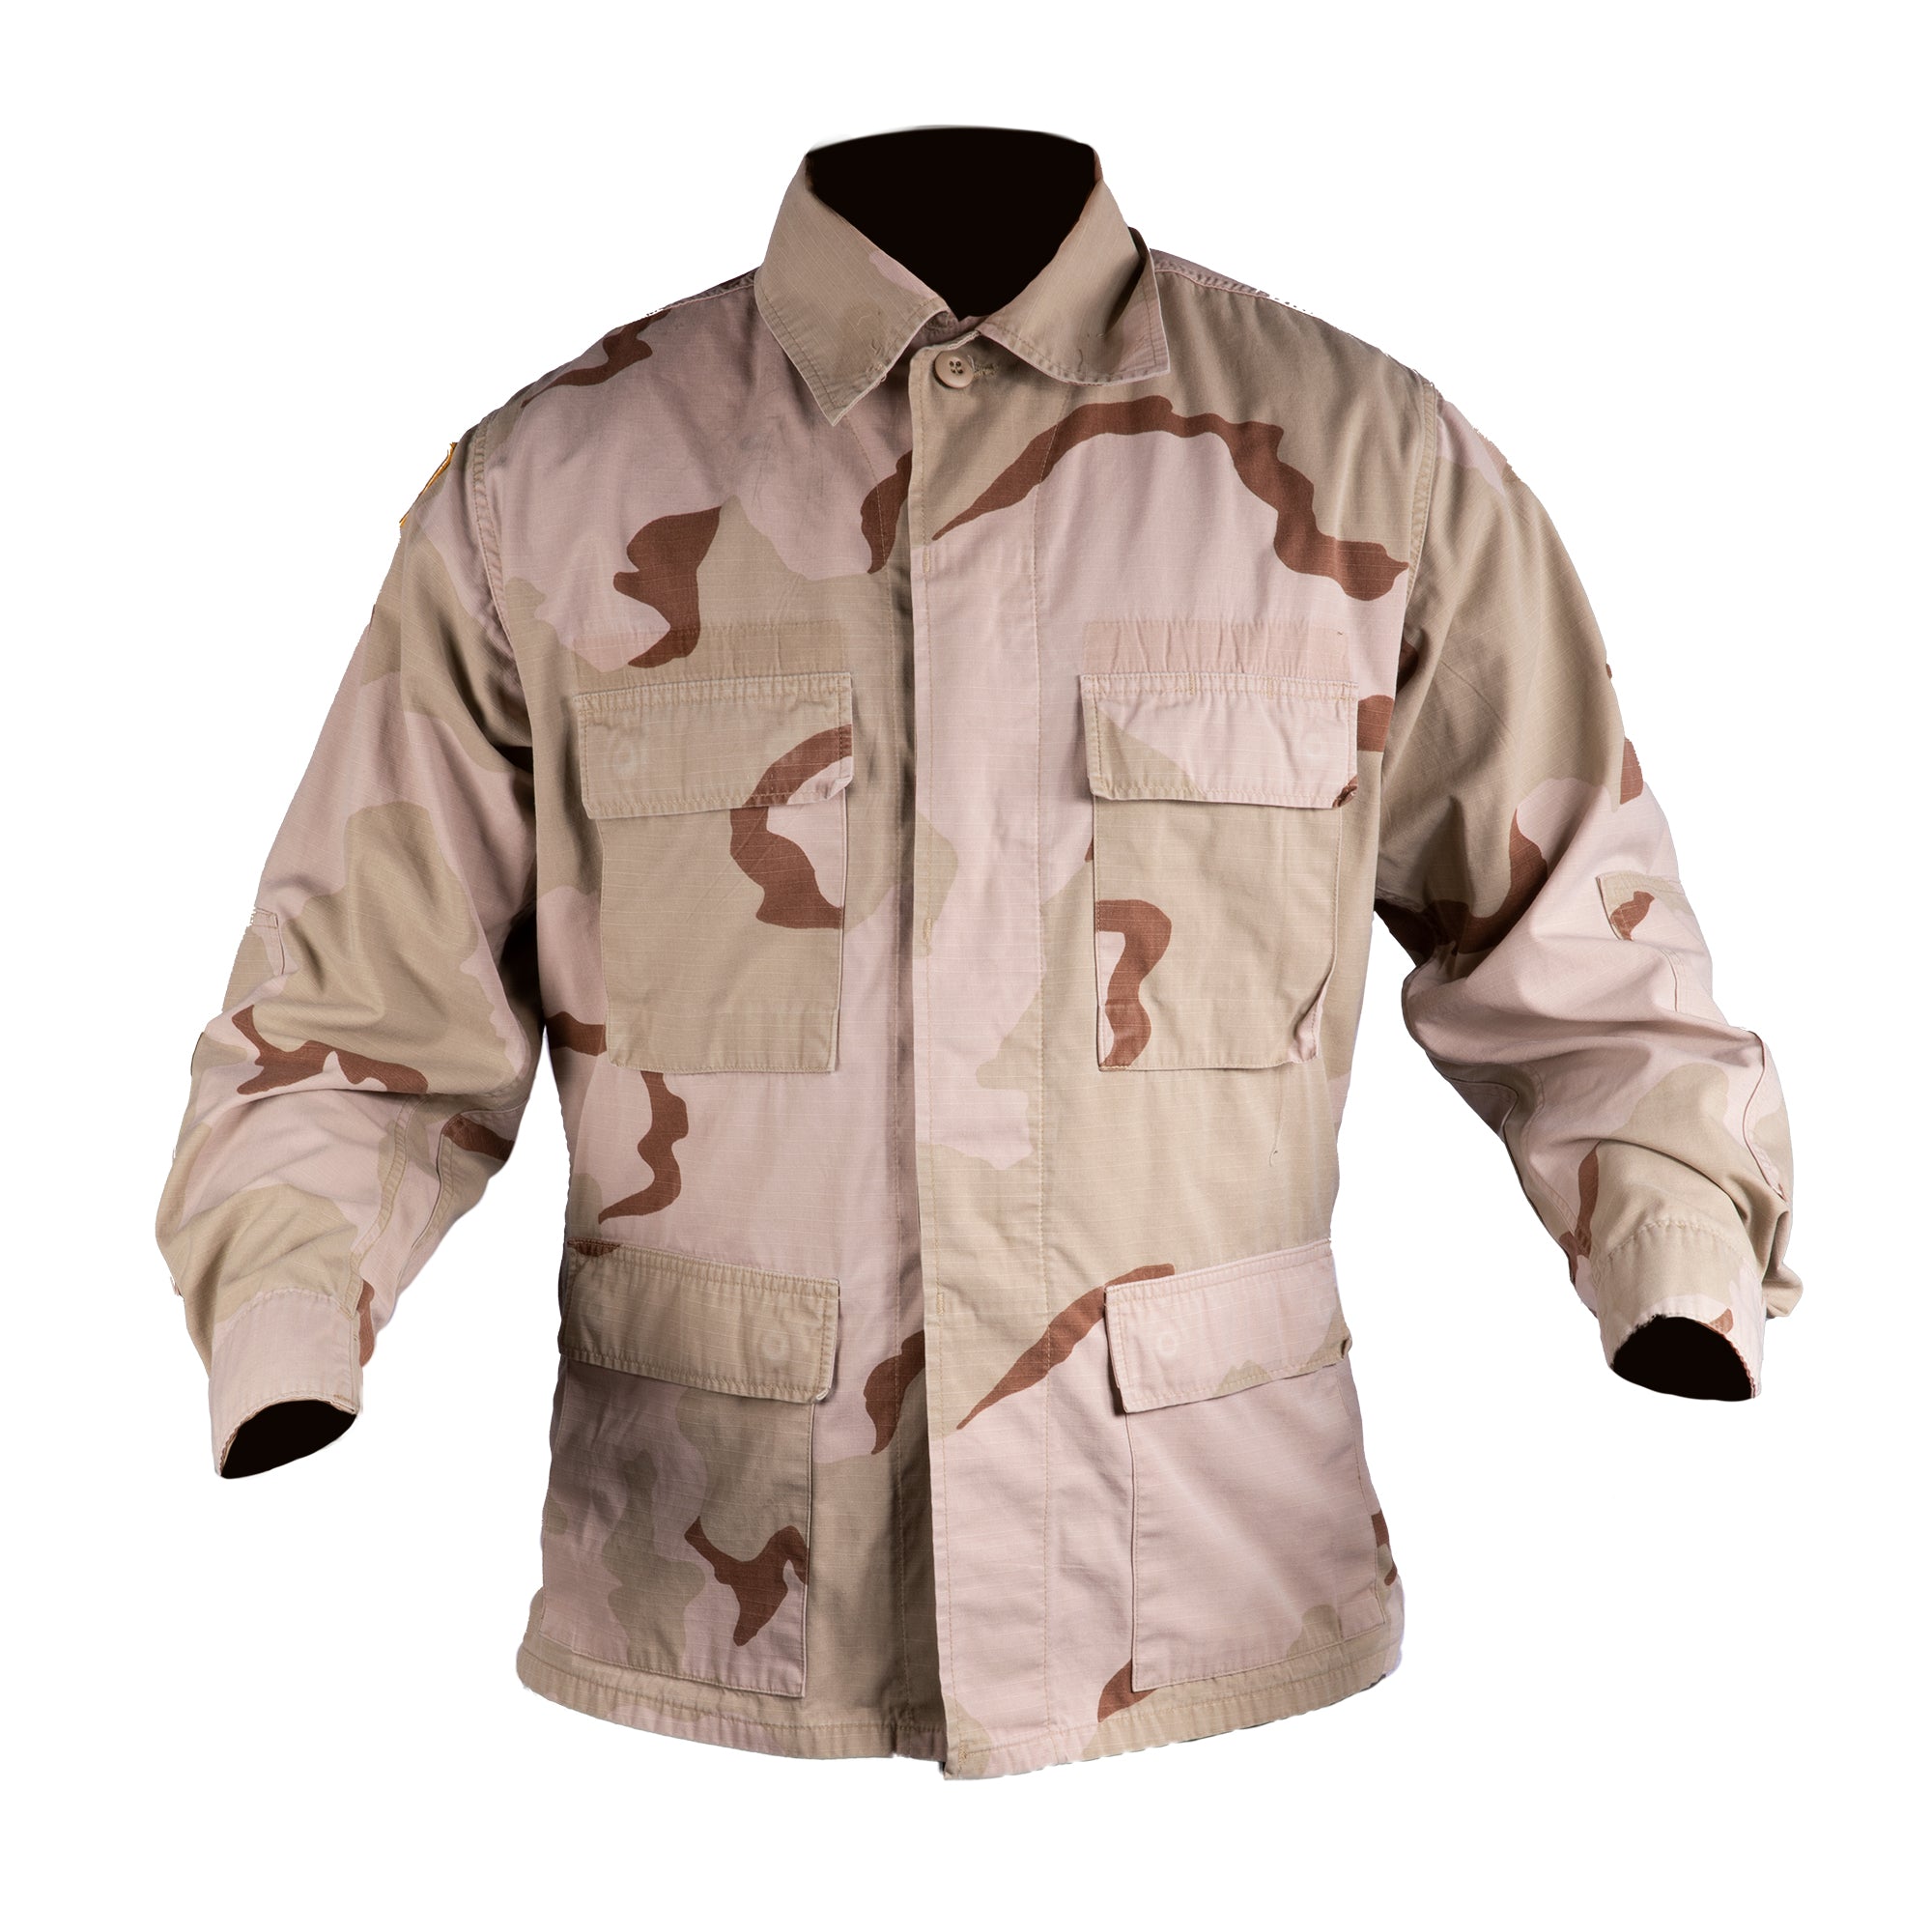 Military DCU Tri-Color Desert Camo Blouse Combat Uniform Shirt